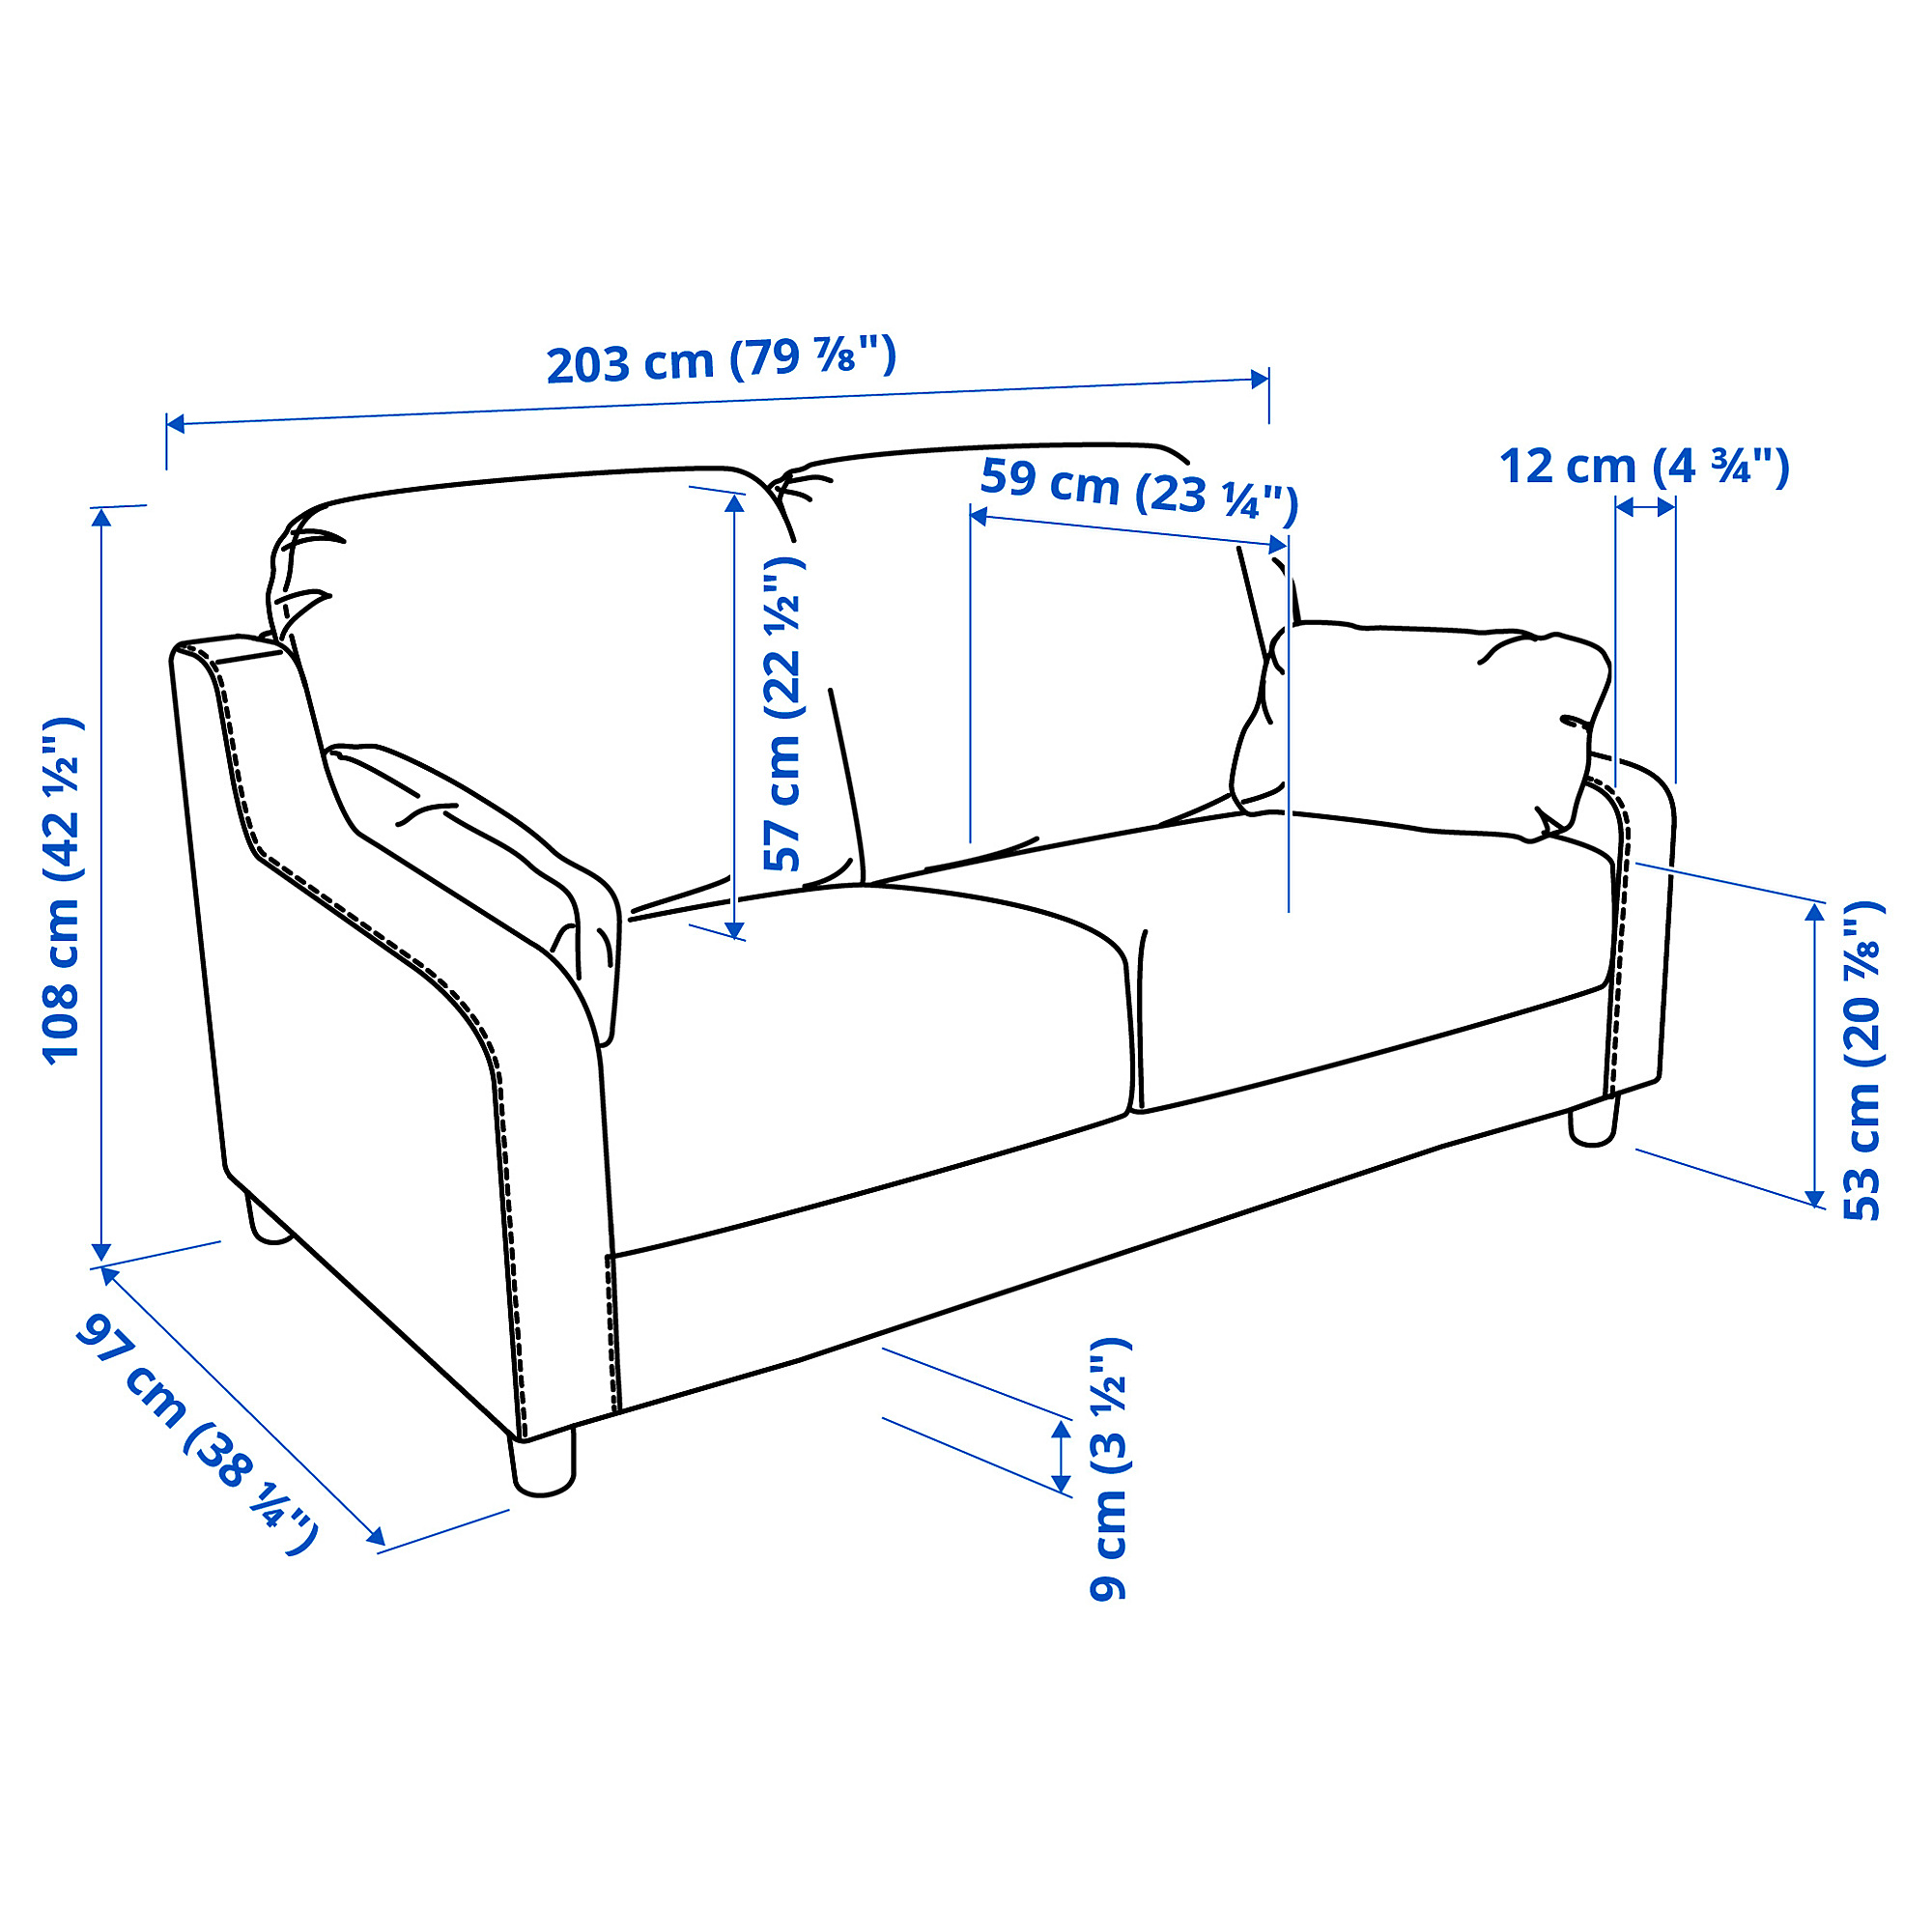 VINLIDEN 3-seat sofa